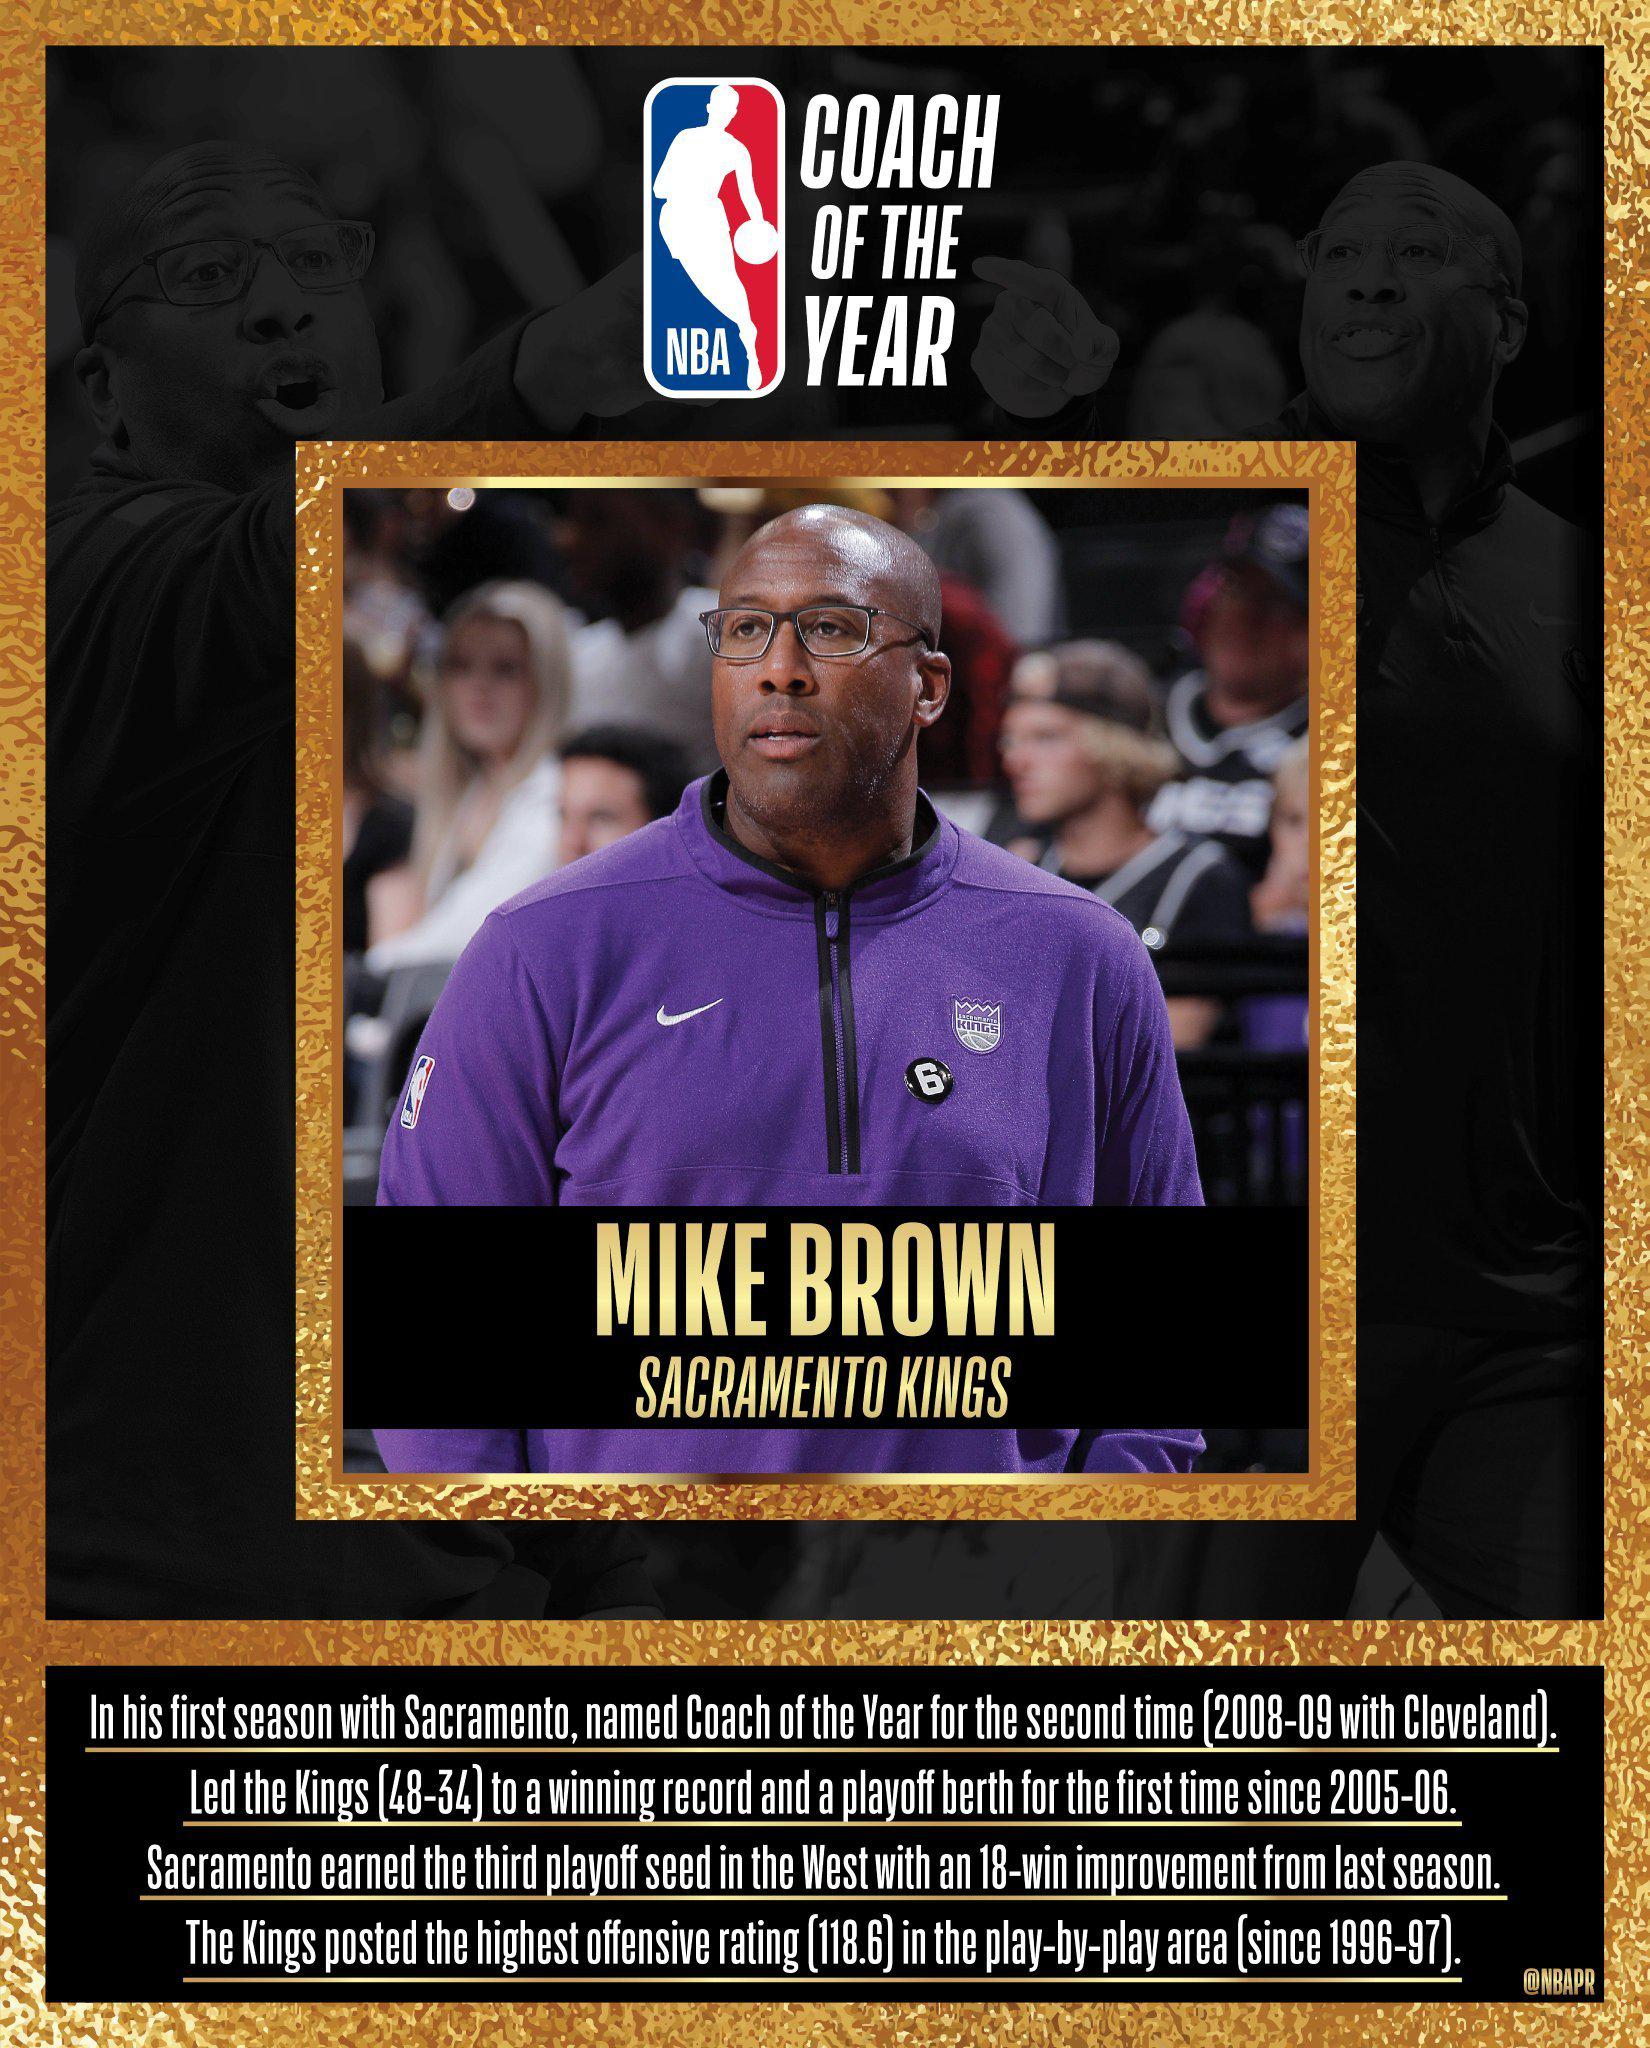 毫无悬念的一个奖项以完美的方式归入迈克·布朗囊中，他成为NBA历史上第一位拿到全(1)